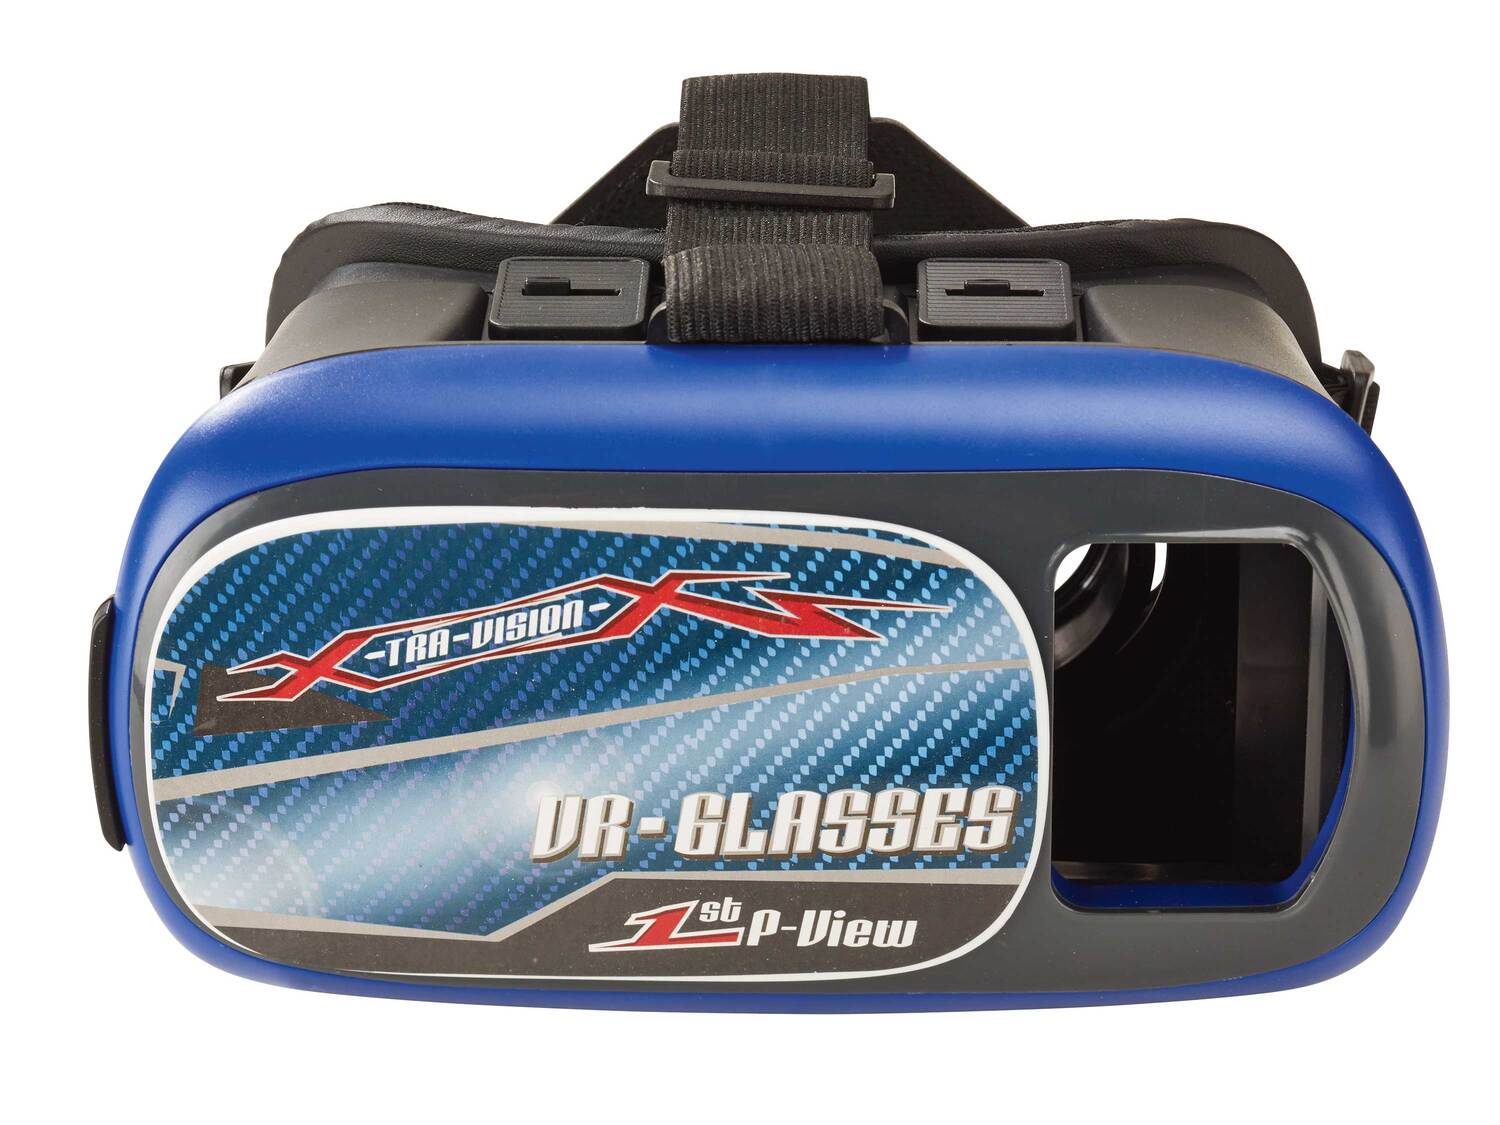 Samochód z kamerą Wi-Fi i okularami VR , cena 99,00 PLN 
- wymiary: ok. 29,9 ...